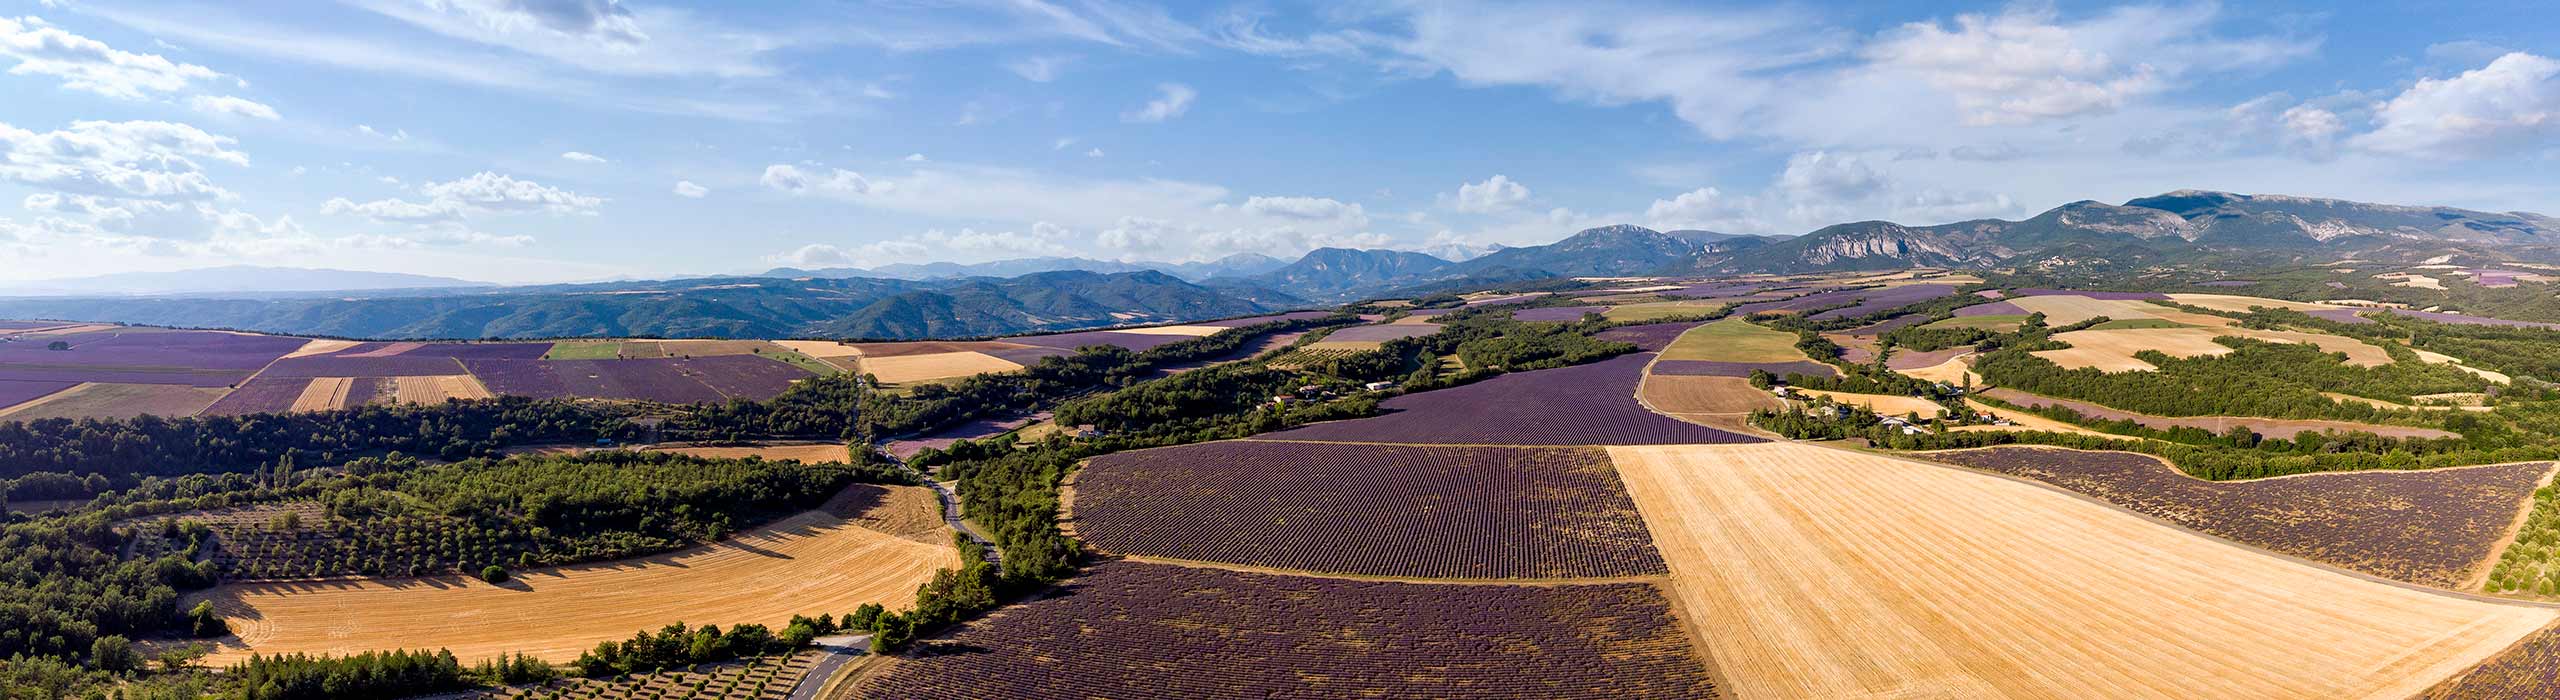 Panoramisch uitzicht op het plateau van Valensole en zijn vele lavendelvelden